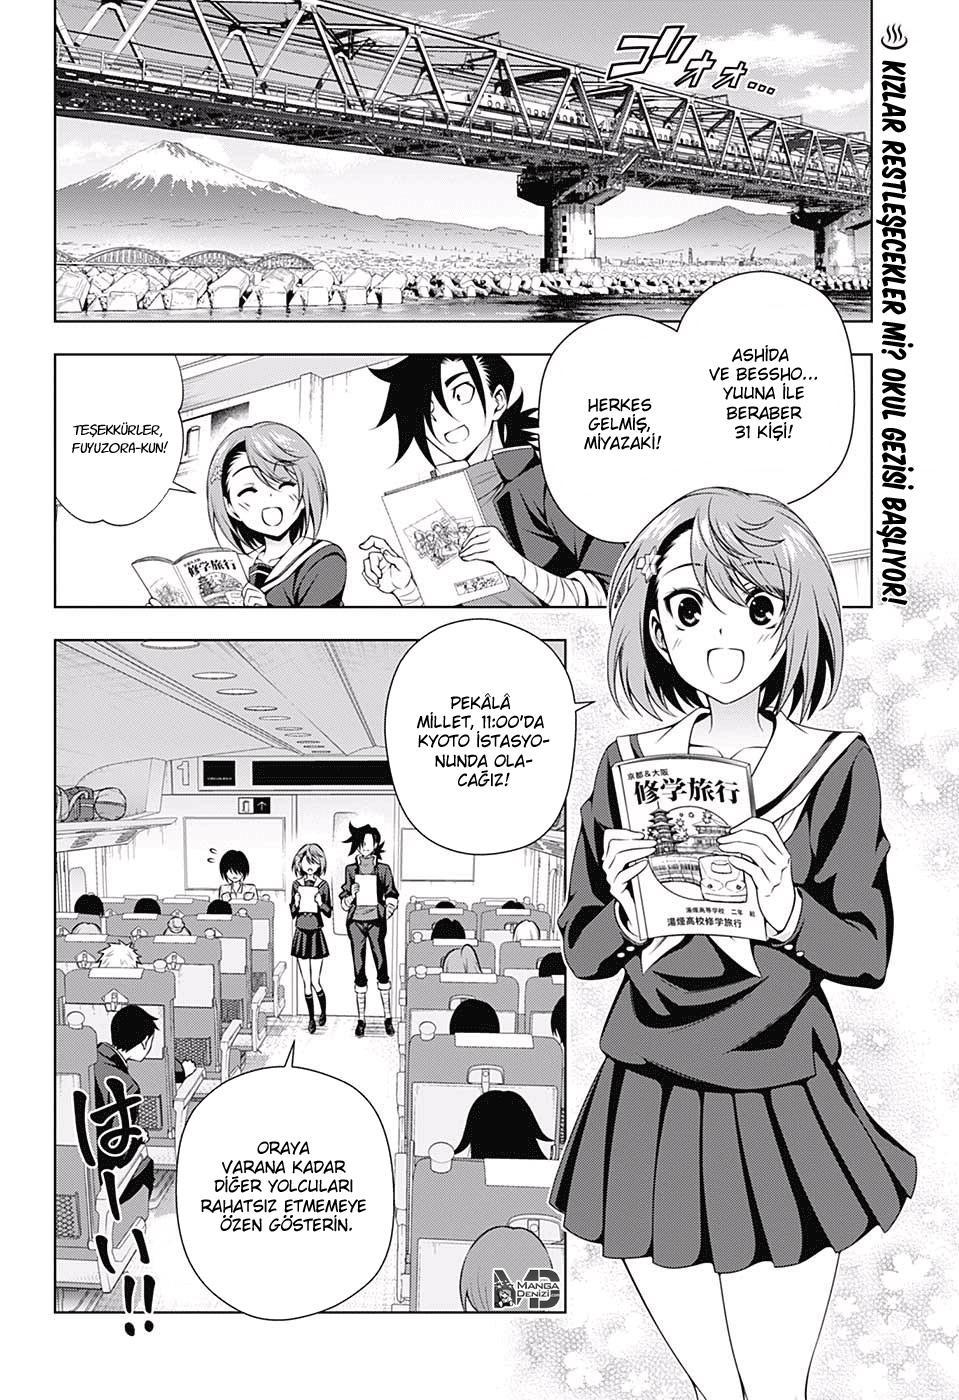 Yuragi-sou no Yuuna-san mangasının 143 bölümünün 3. sayfasını okuyorsunuz.